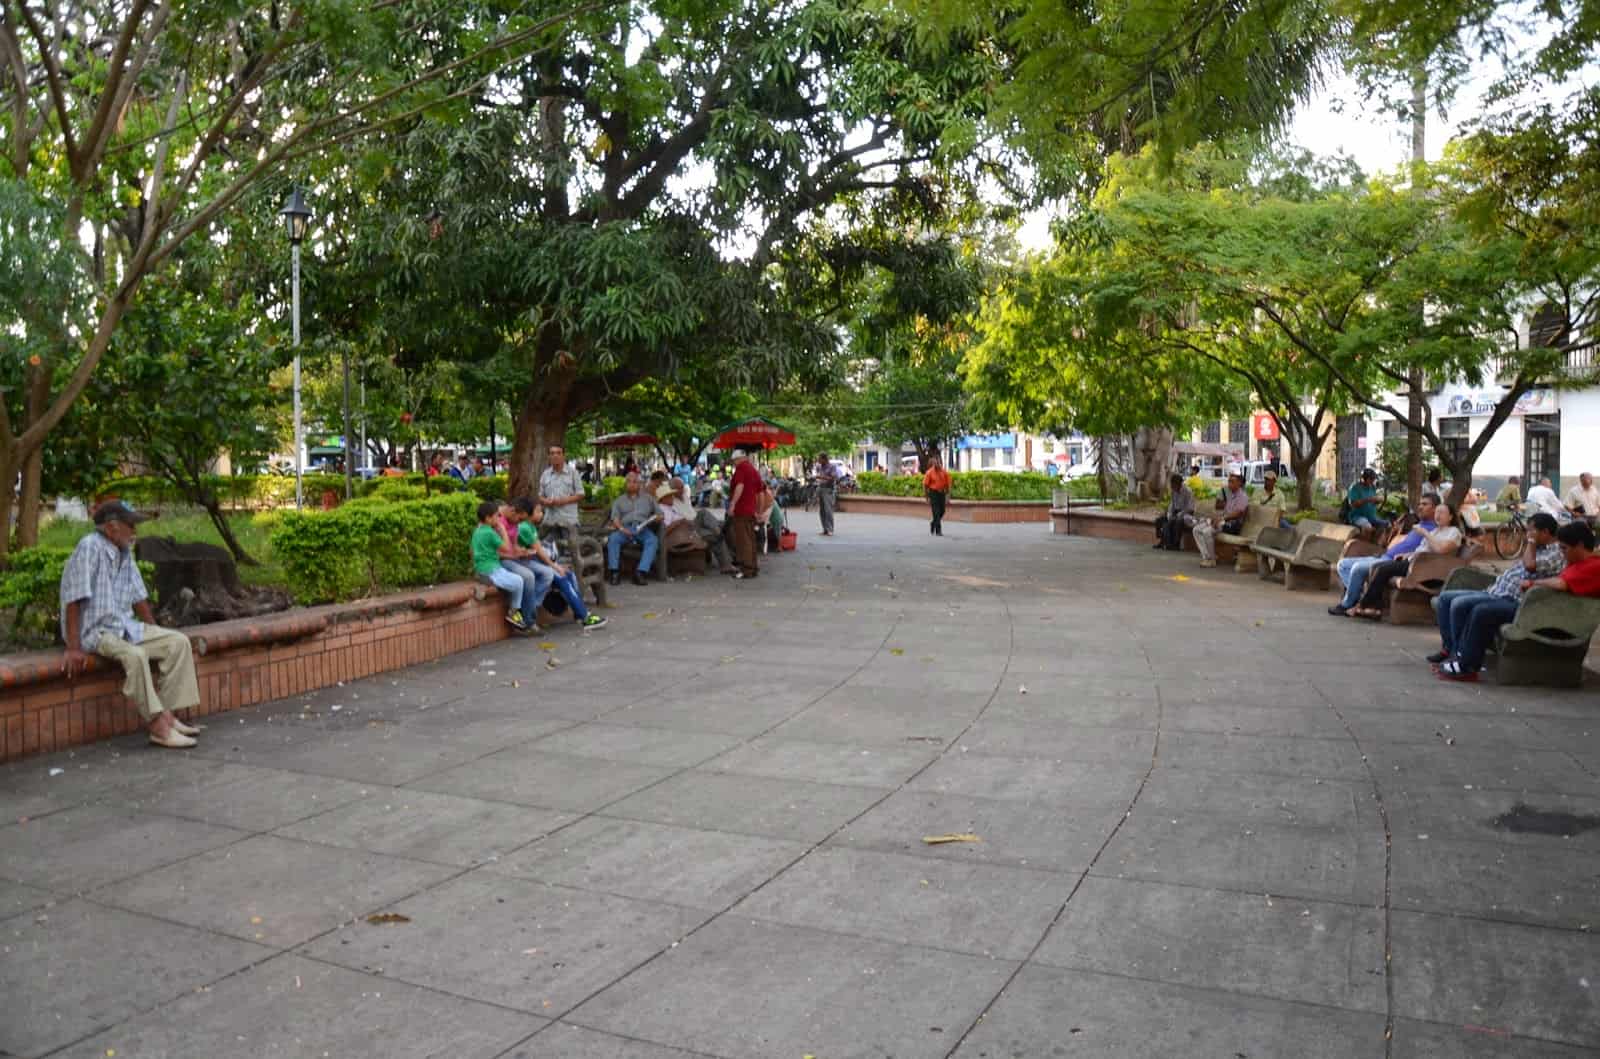 Parque de Bolívar in Cartago, Valle del Cauca, Colombia